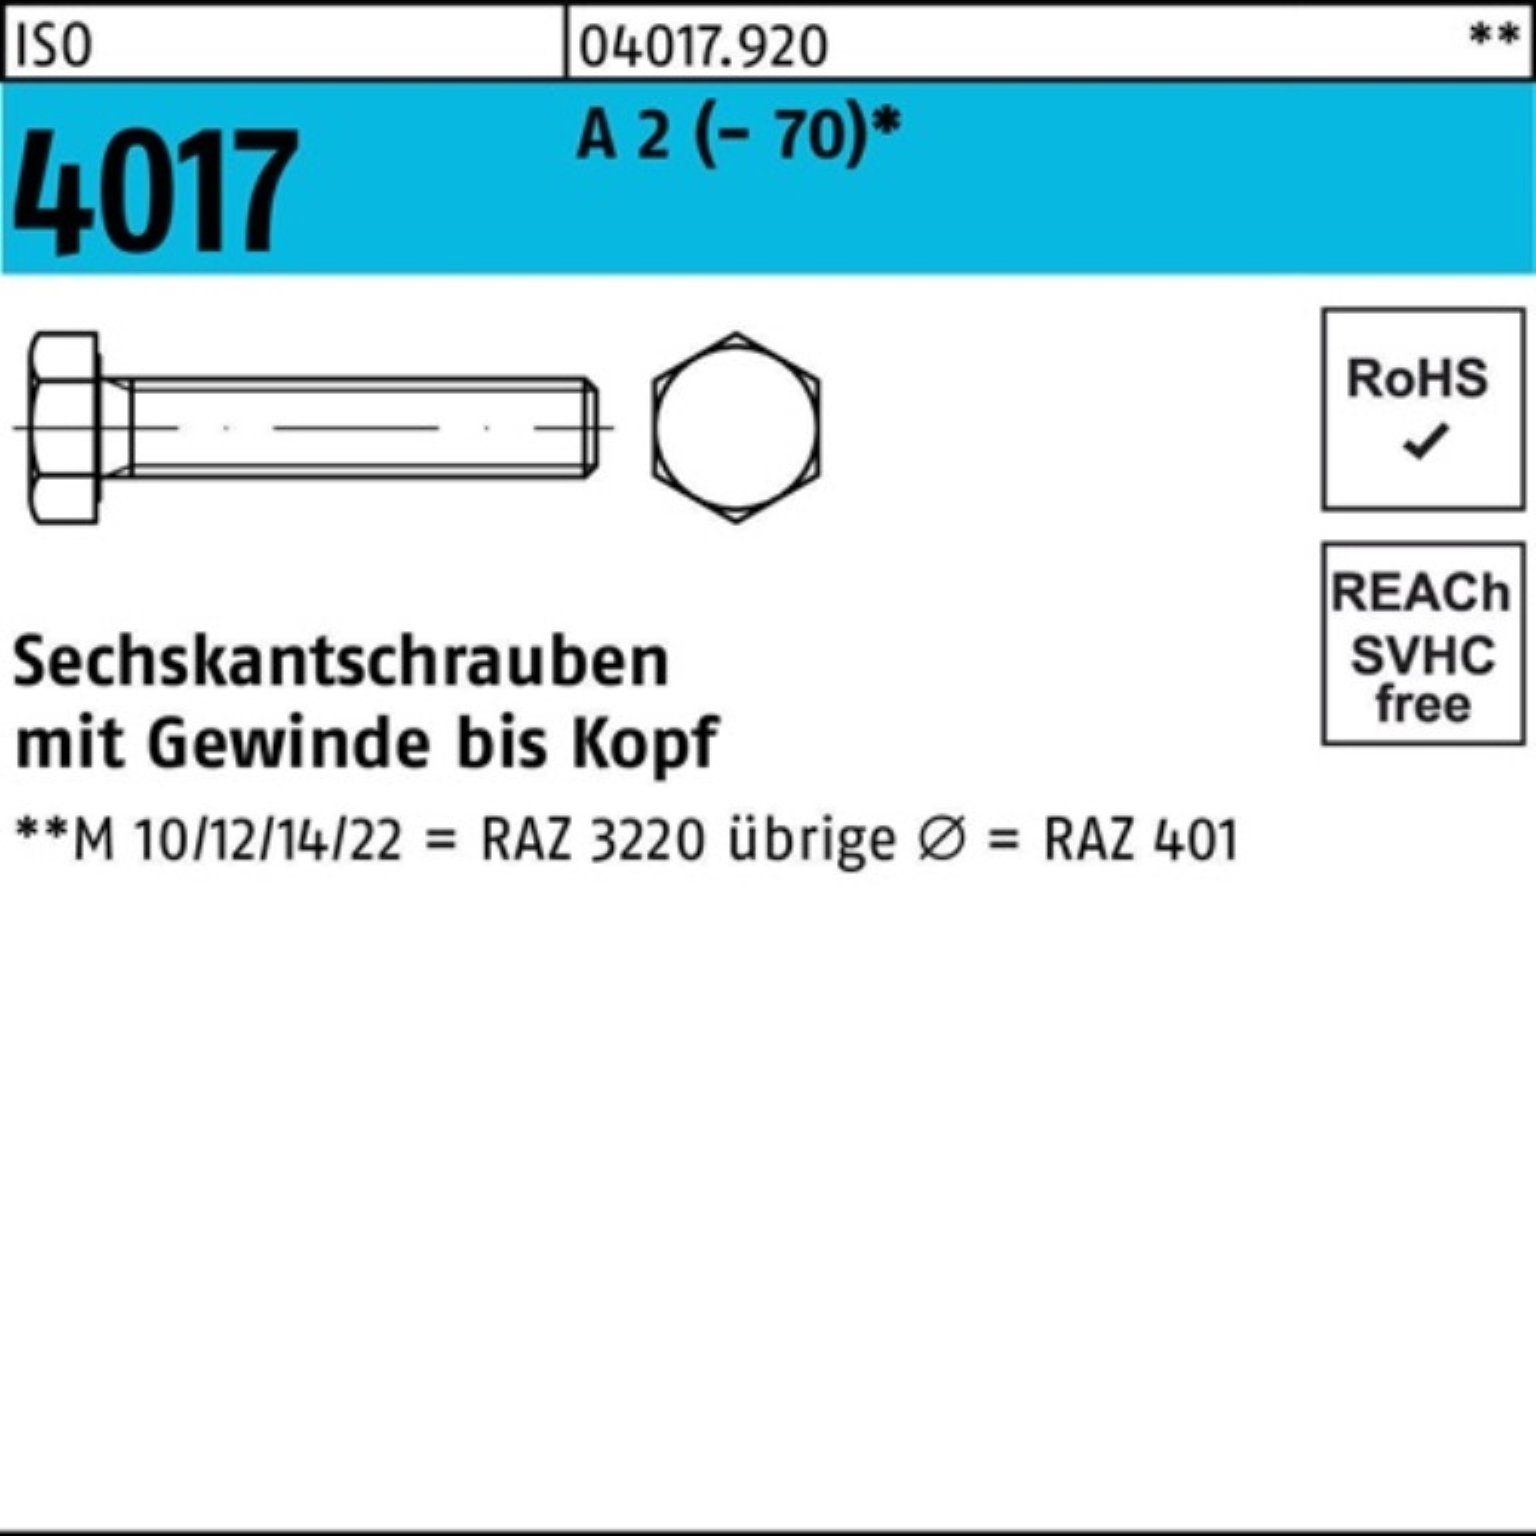 Bufab Sechskantschraube 100er Pack Sechskantschraube 1 200 M10x ISO Stück A VG 2 4017 (70)